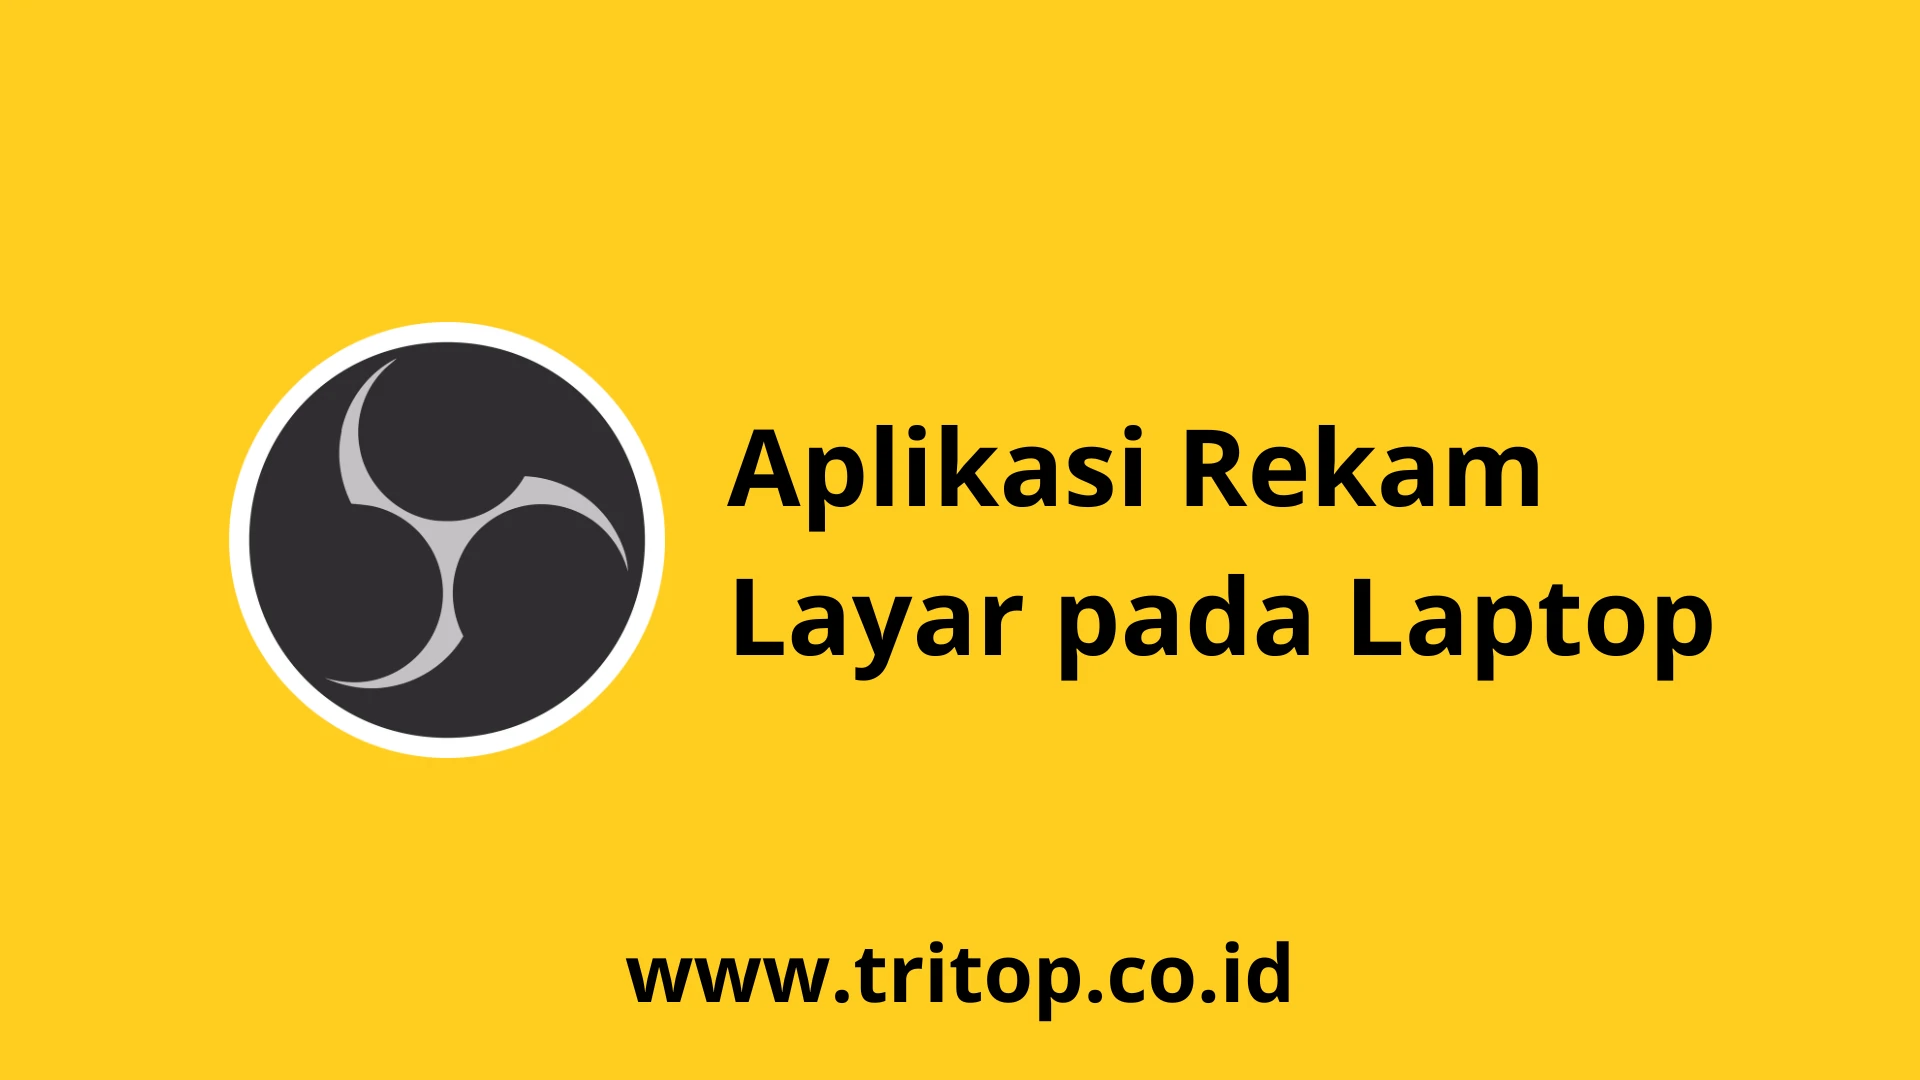 Aplikasi Rekam Layar pada Laptop Tritop.co.id